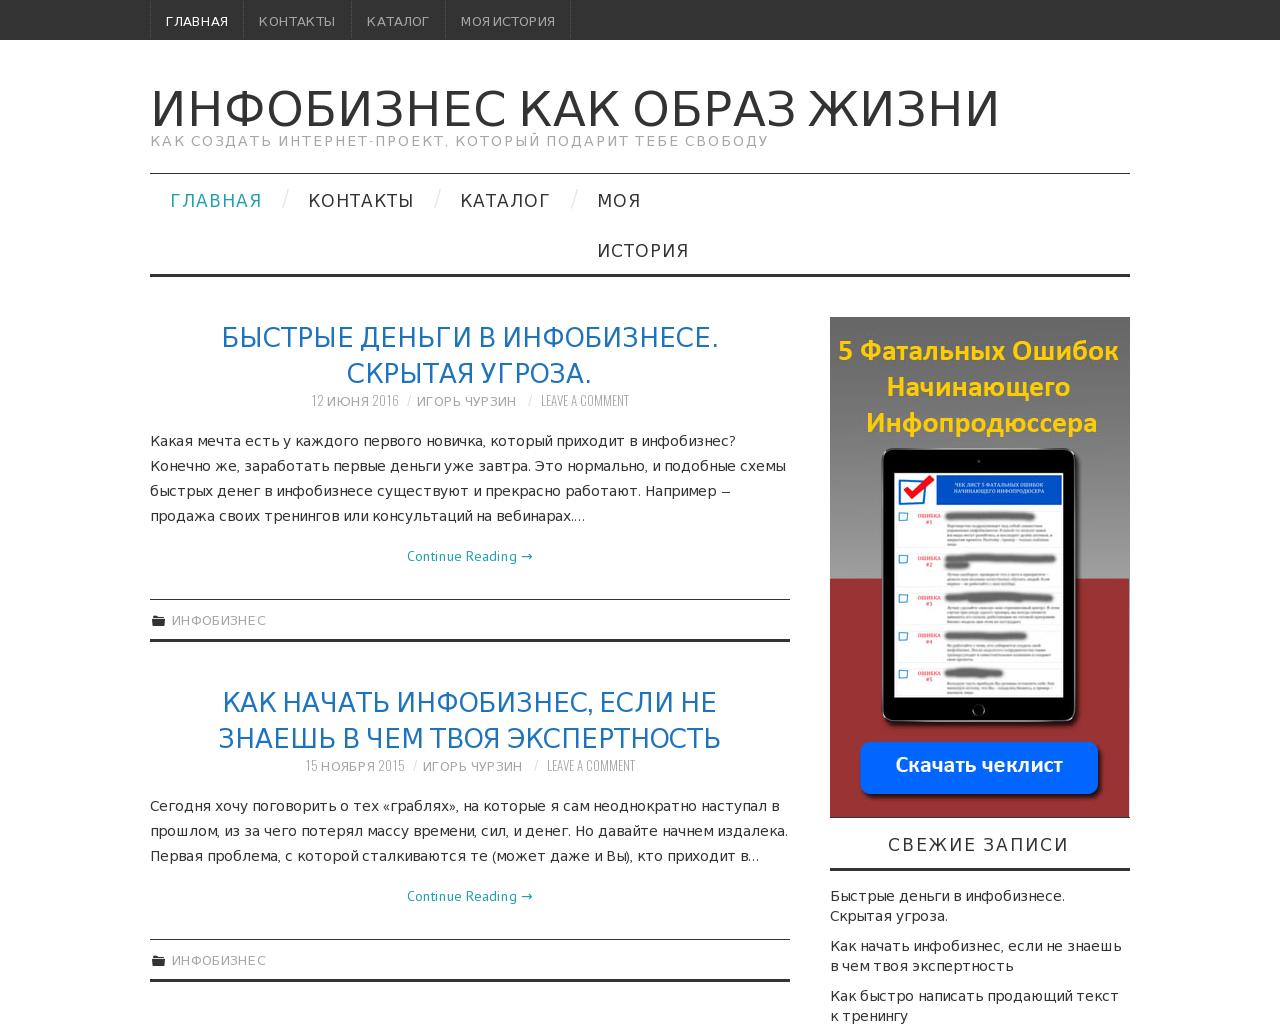 Изображение сайта igorchurzin.ru в разрешении 1280x1024